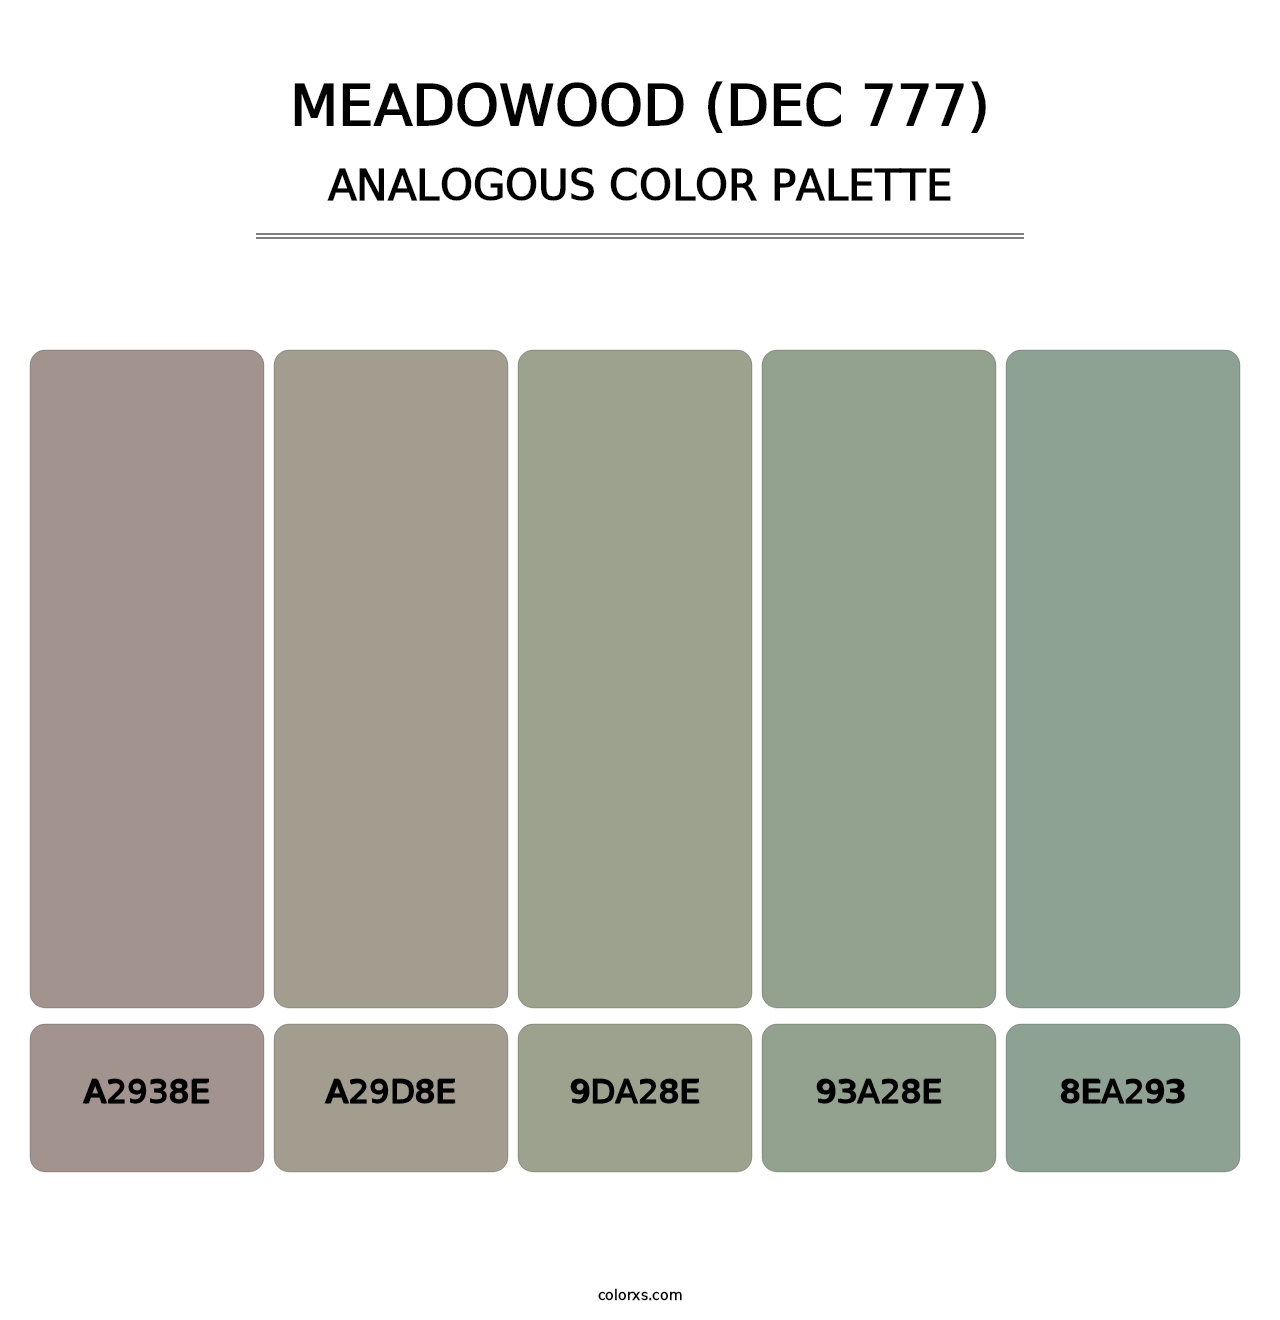 Meadowood (DEC 777) - Analogous Color Palette